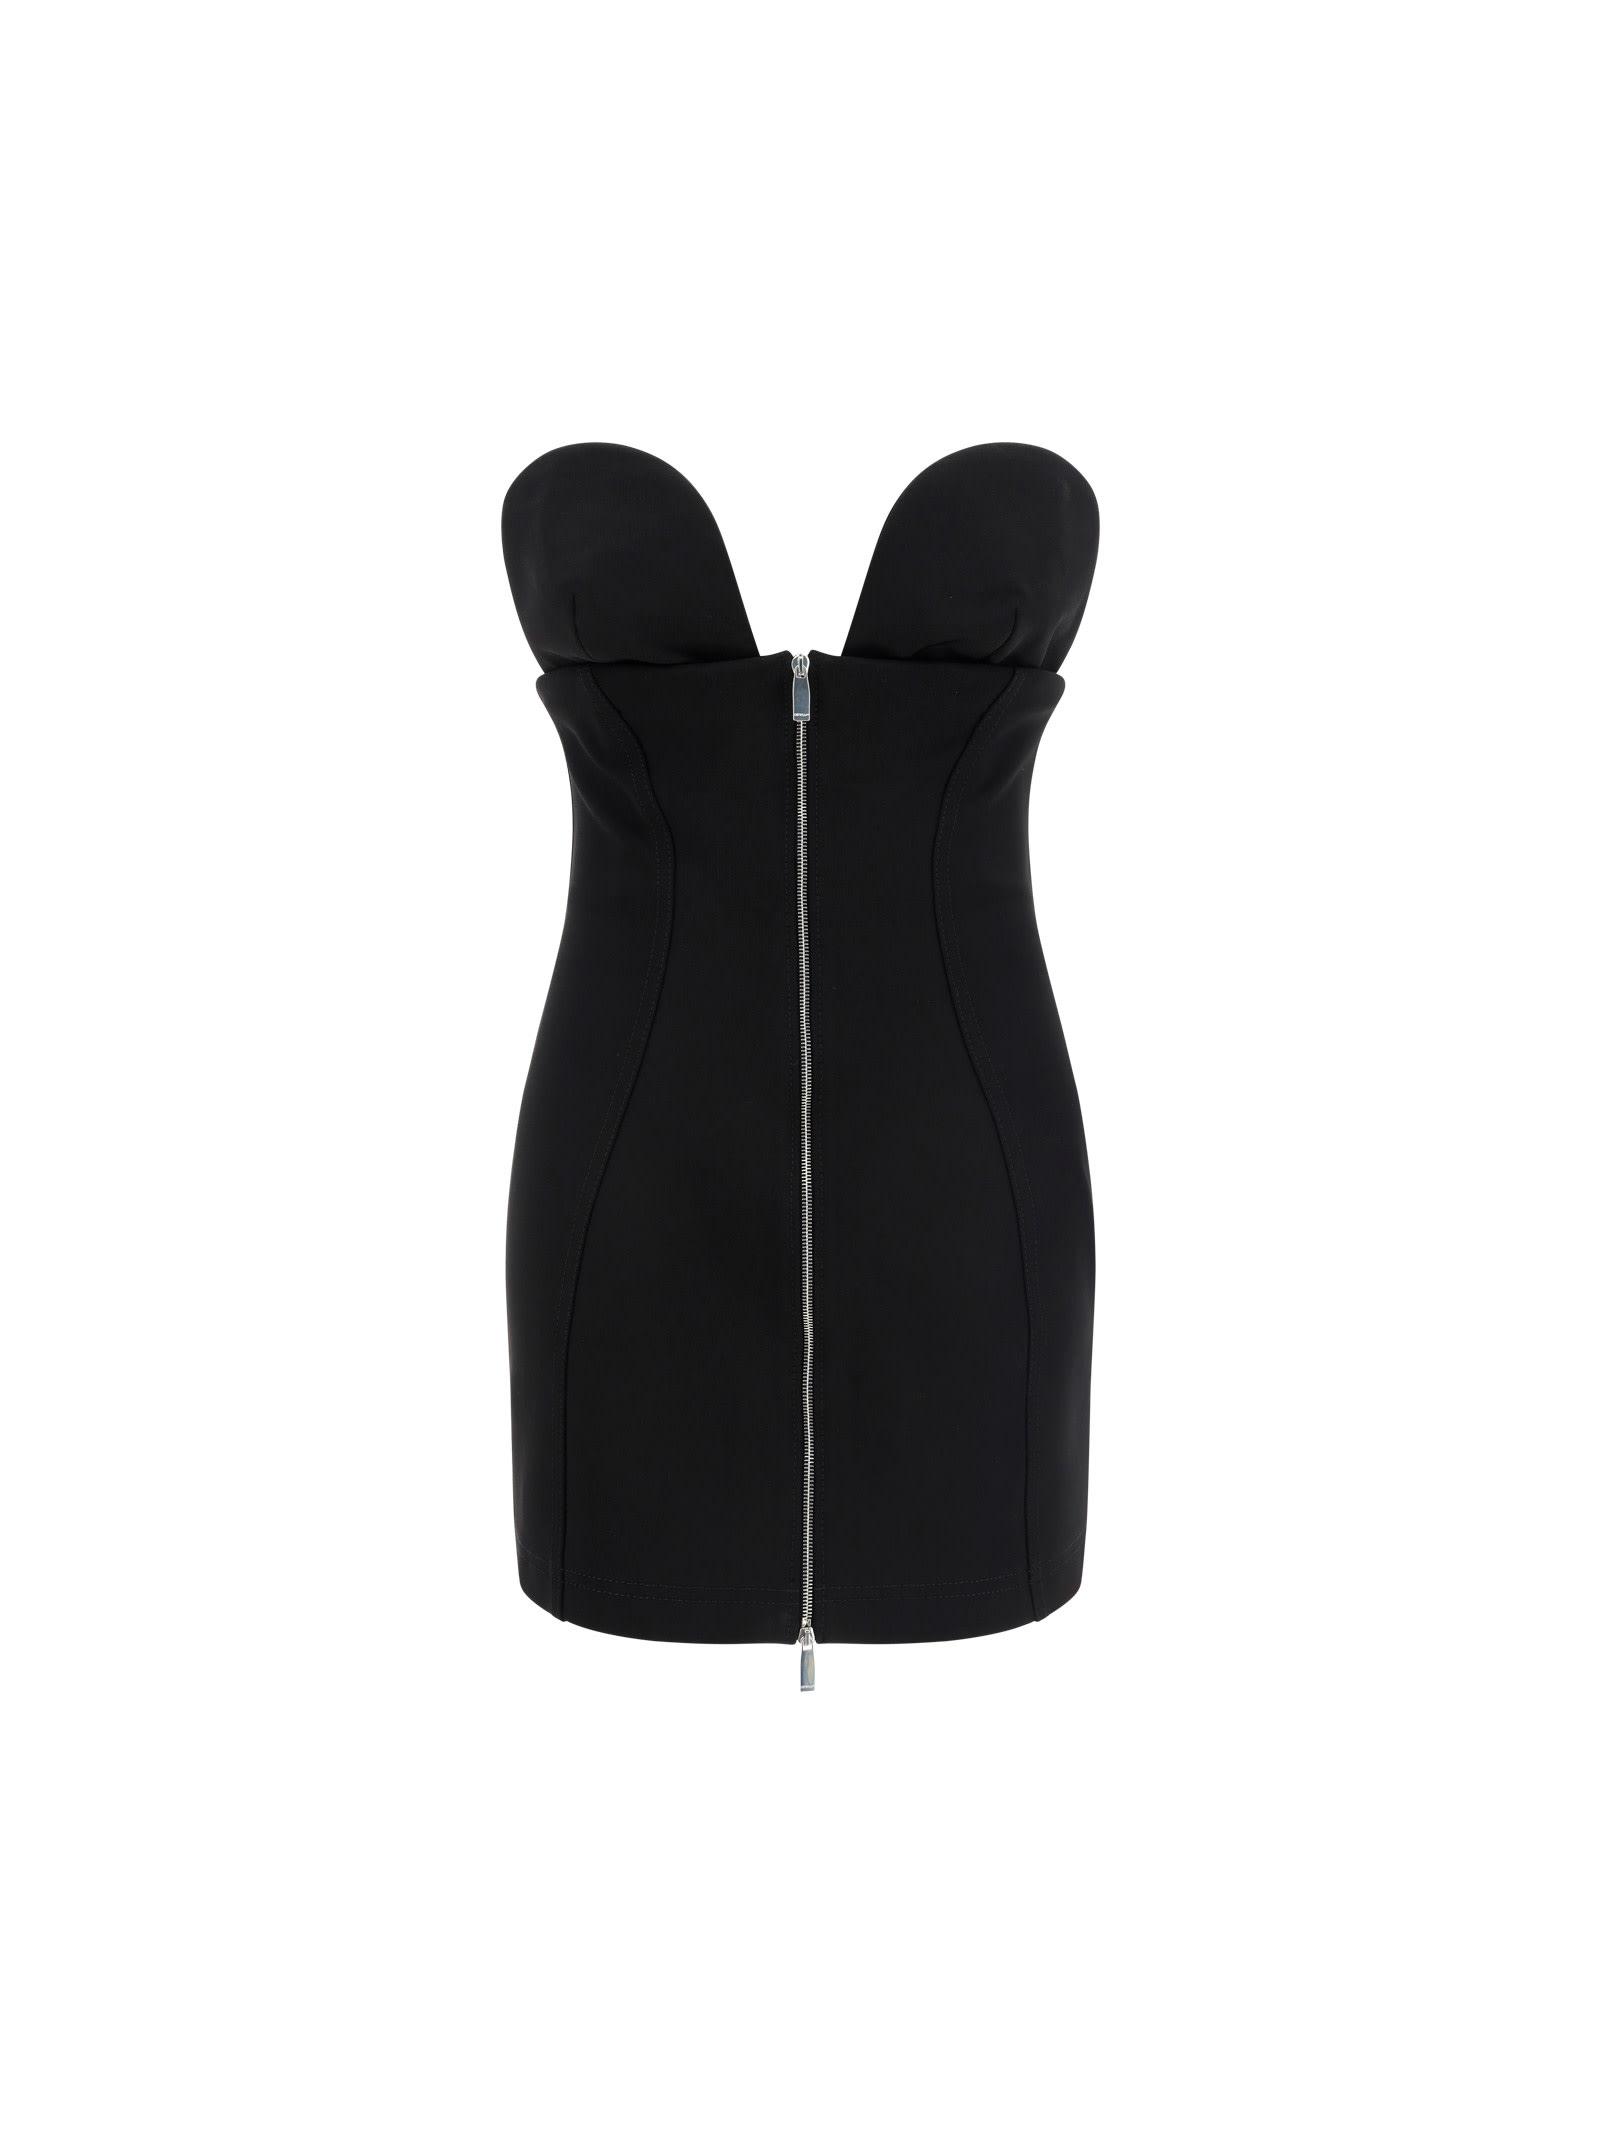 Off-White c/o Virgil Abloh Ablohland Mini Dress in Black | Lyst UK